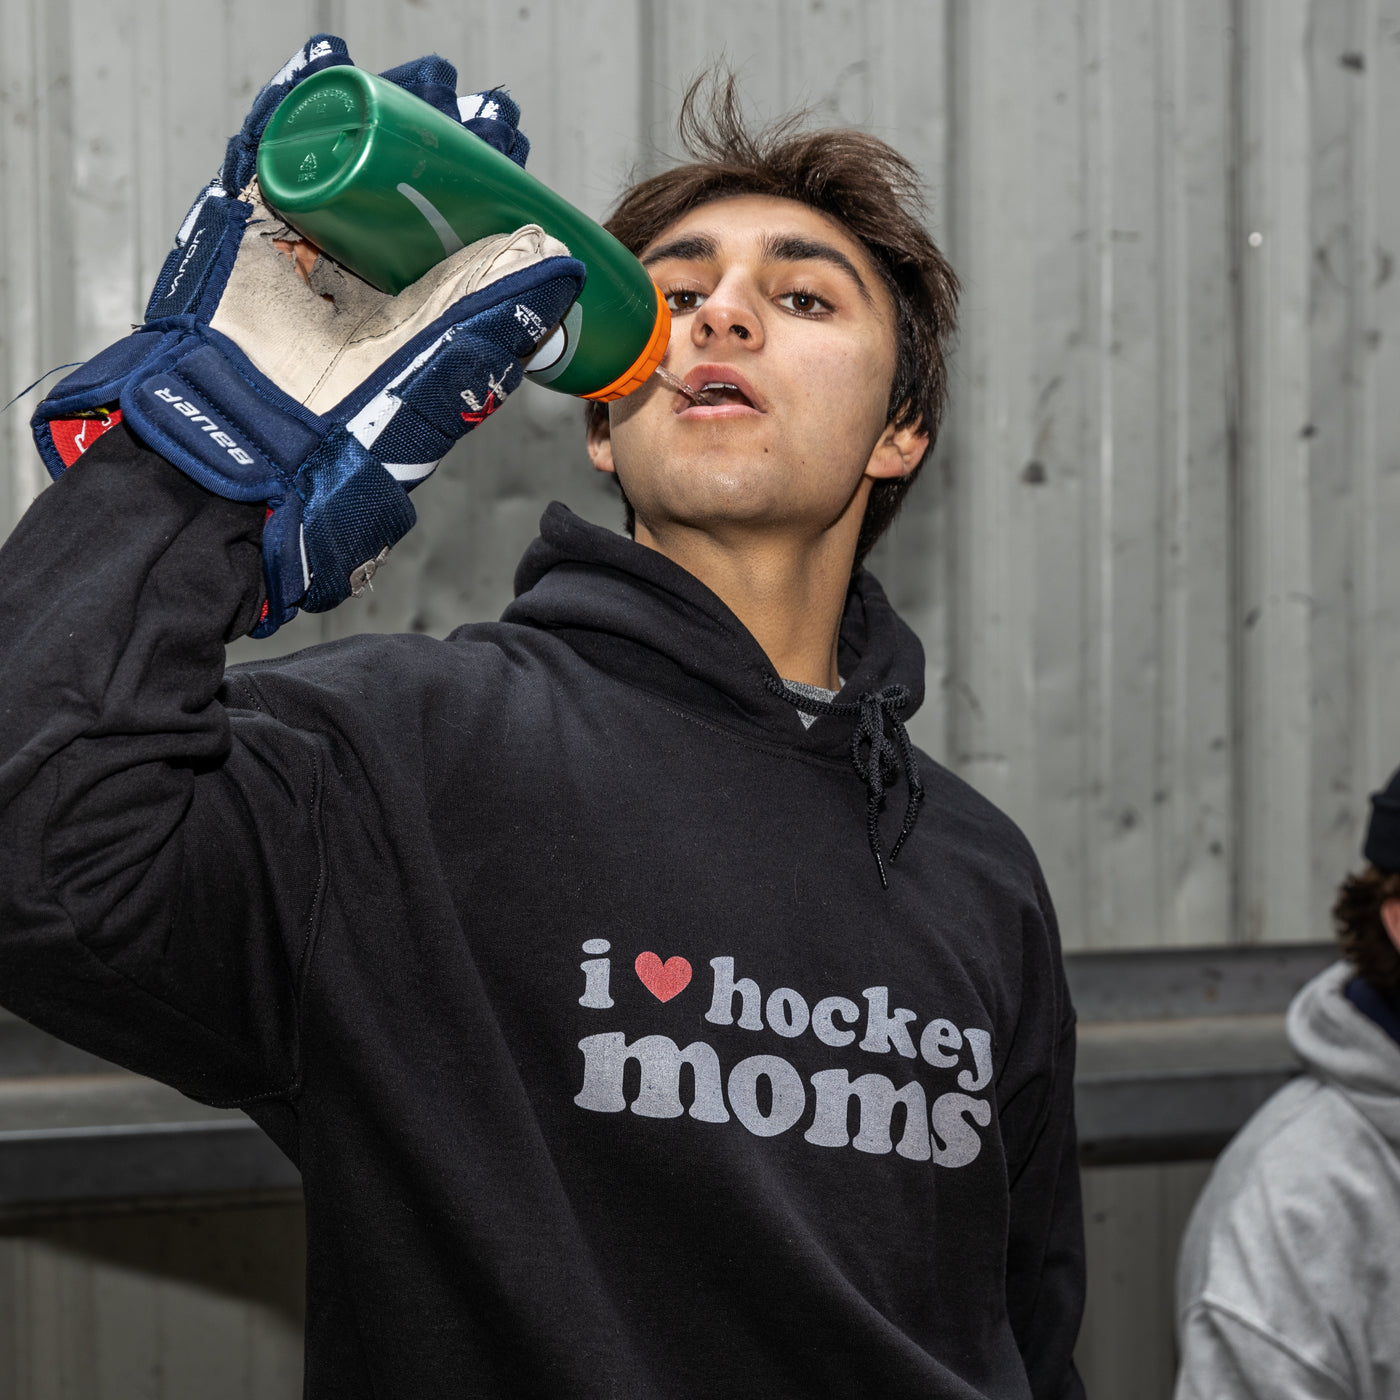 Shop Hoodies LINK IN BIO #hockey #hockeybenders #hockeymoms #ilovehock